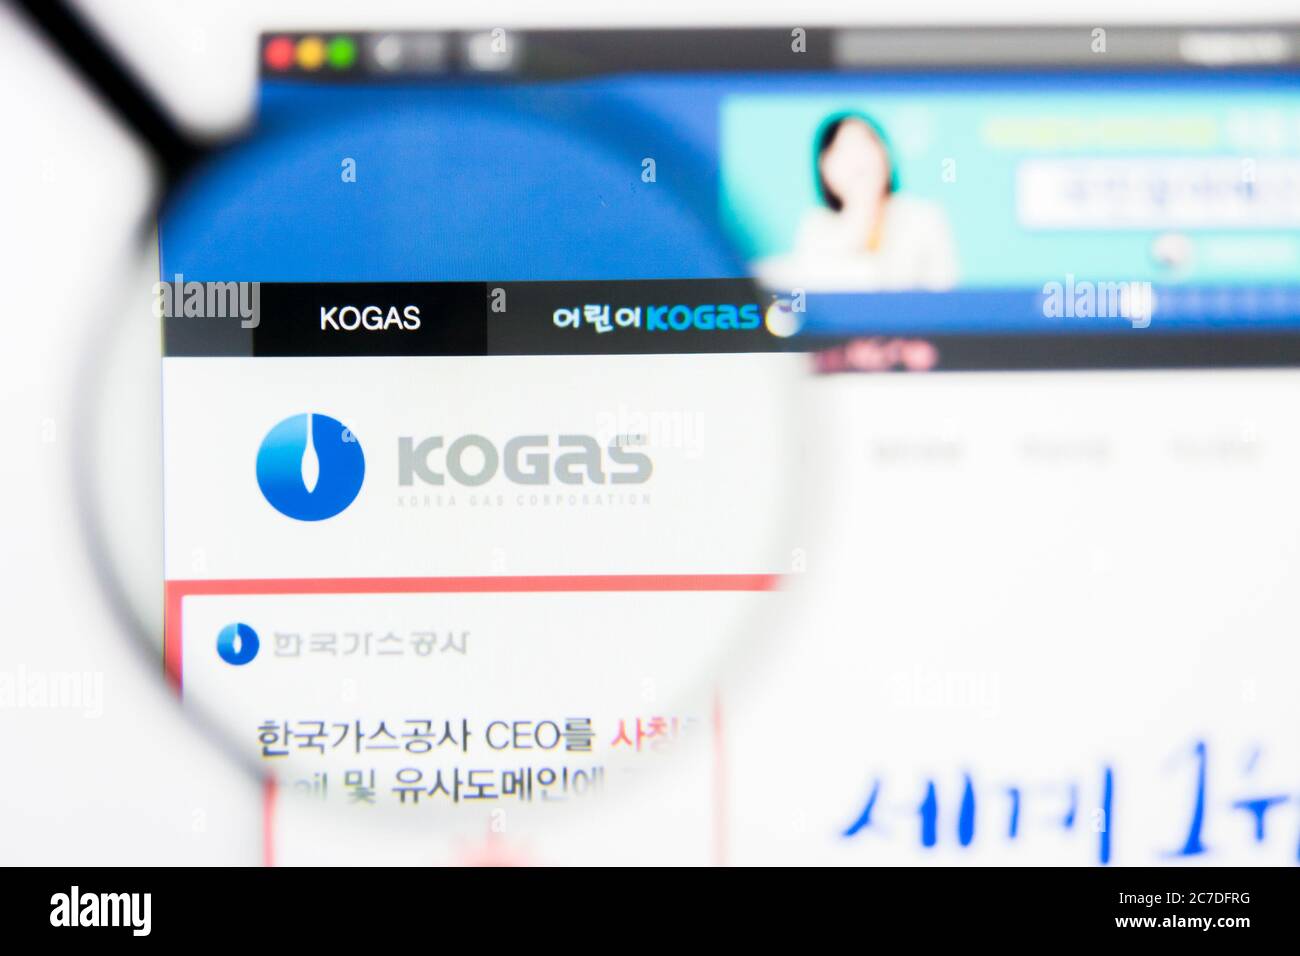 Los Angeles, California, USA - 24 Marzo 2019: Editoriale illustrativo della homepage del sito web Korea gas. Logo gas Corea visibile sullo schermo del display. Foto Stock